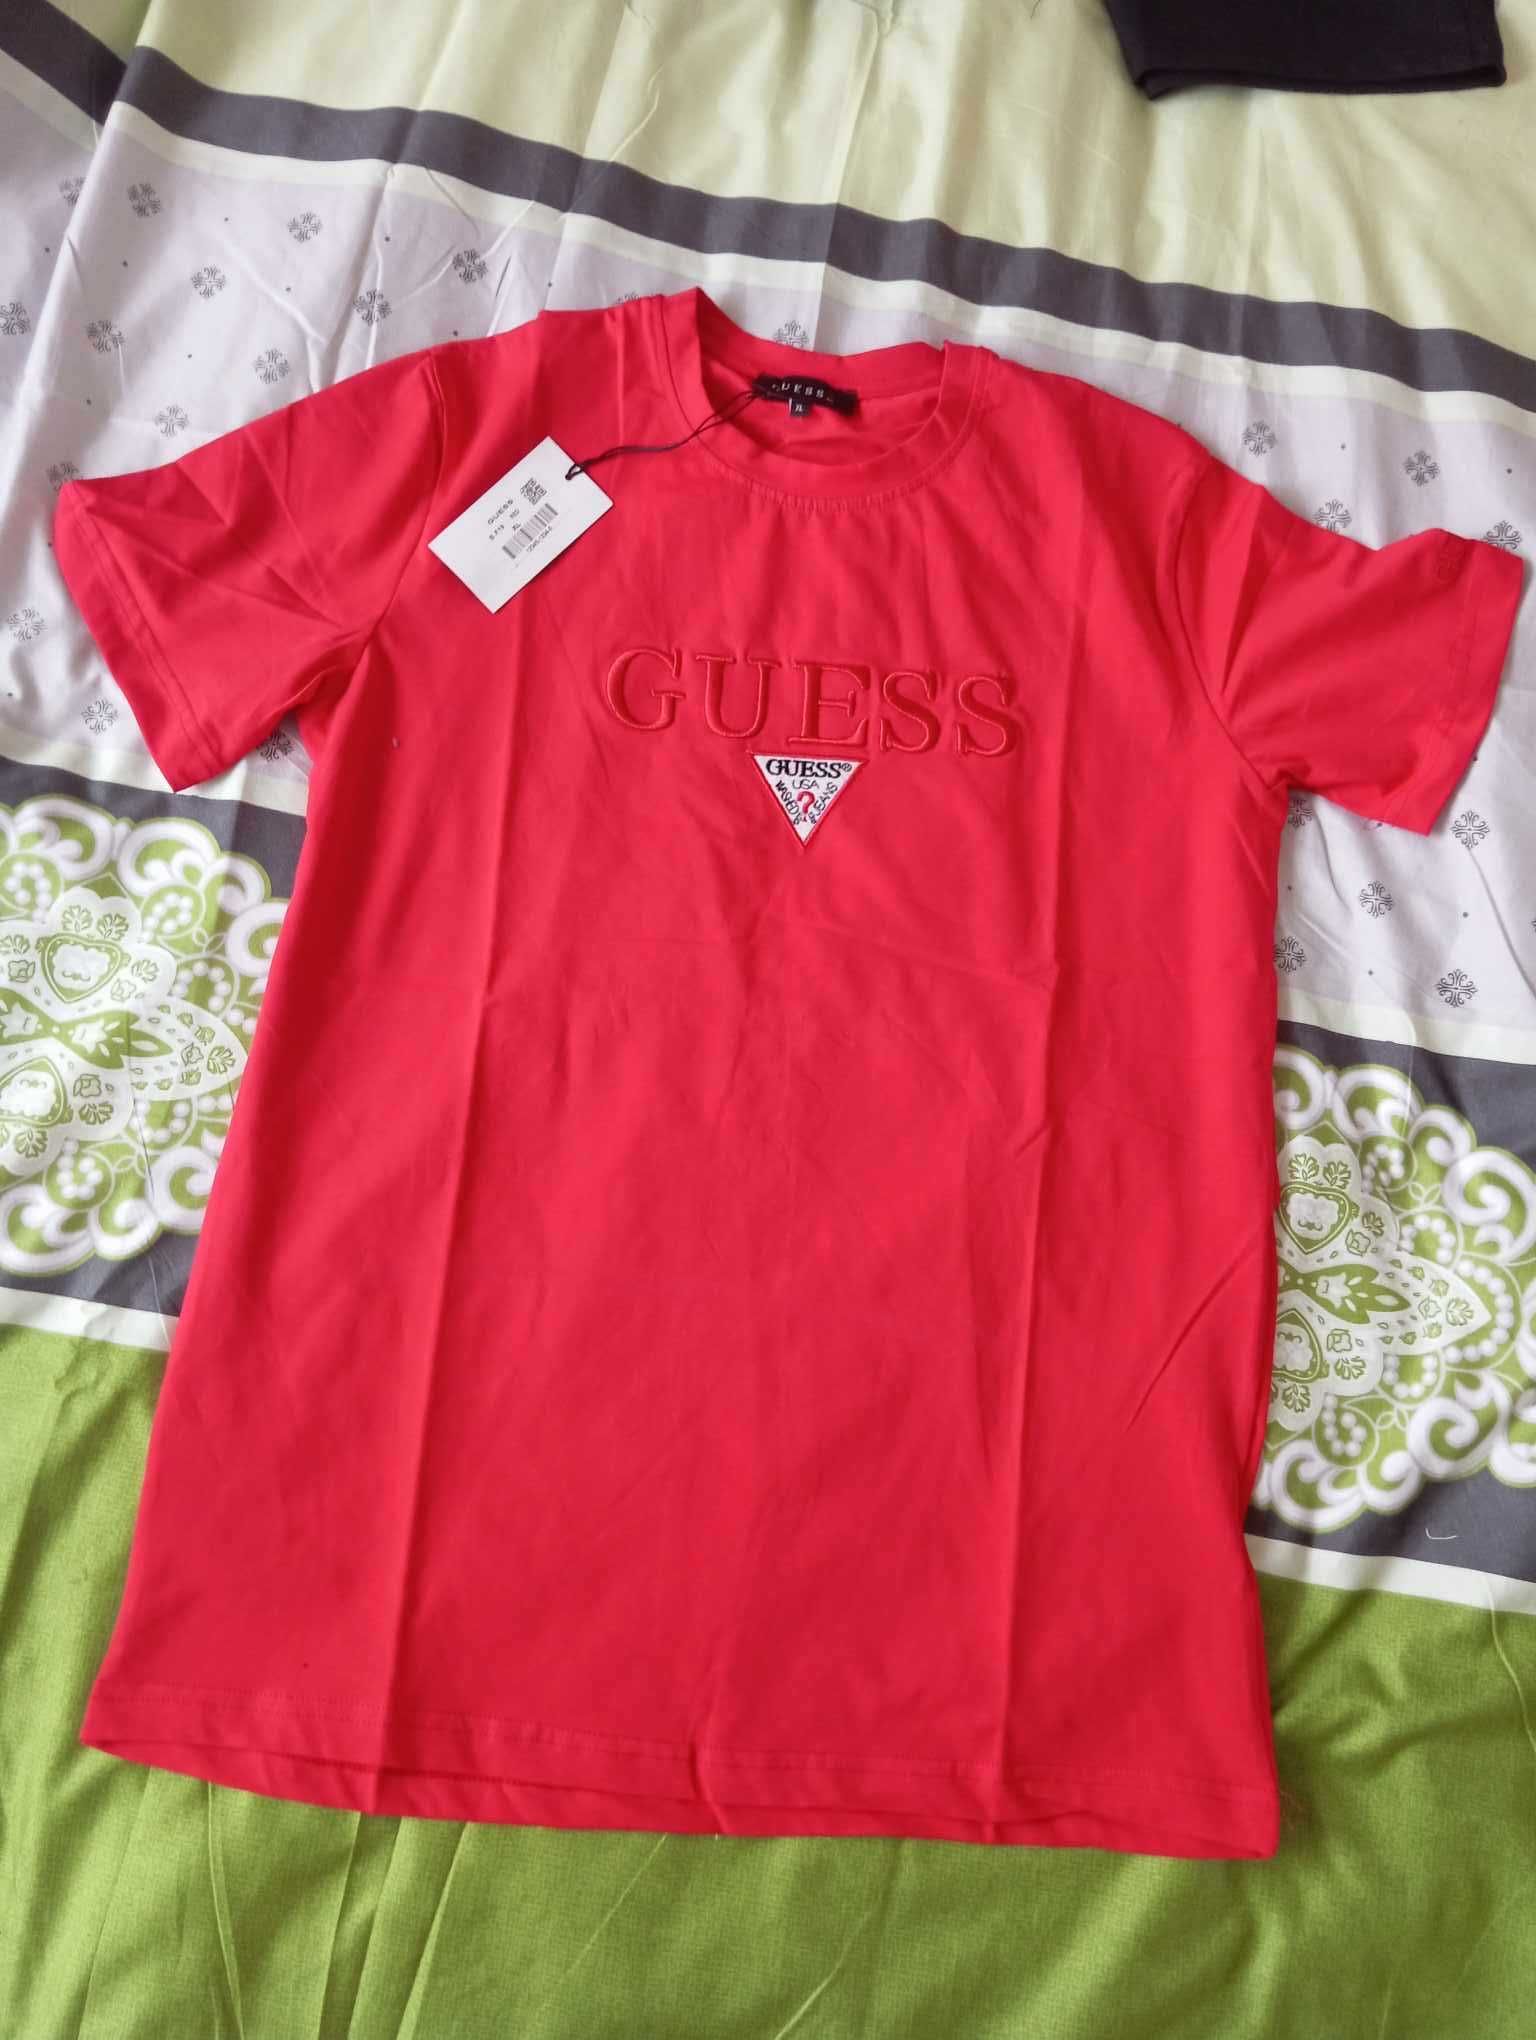 Koszulka Guess, klasyczny t-shirt, czerwona rozmiar XL